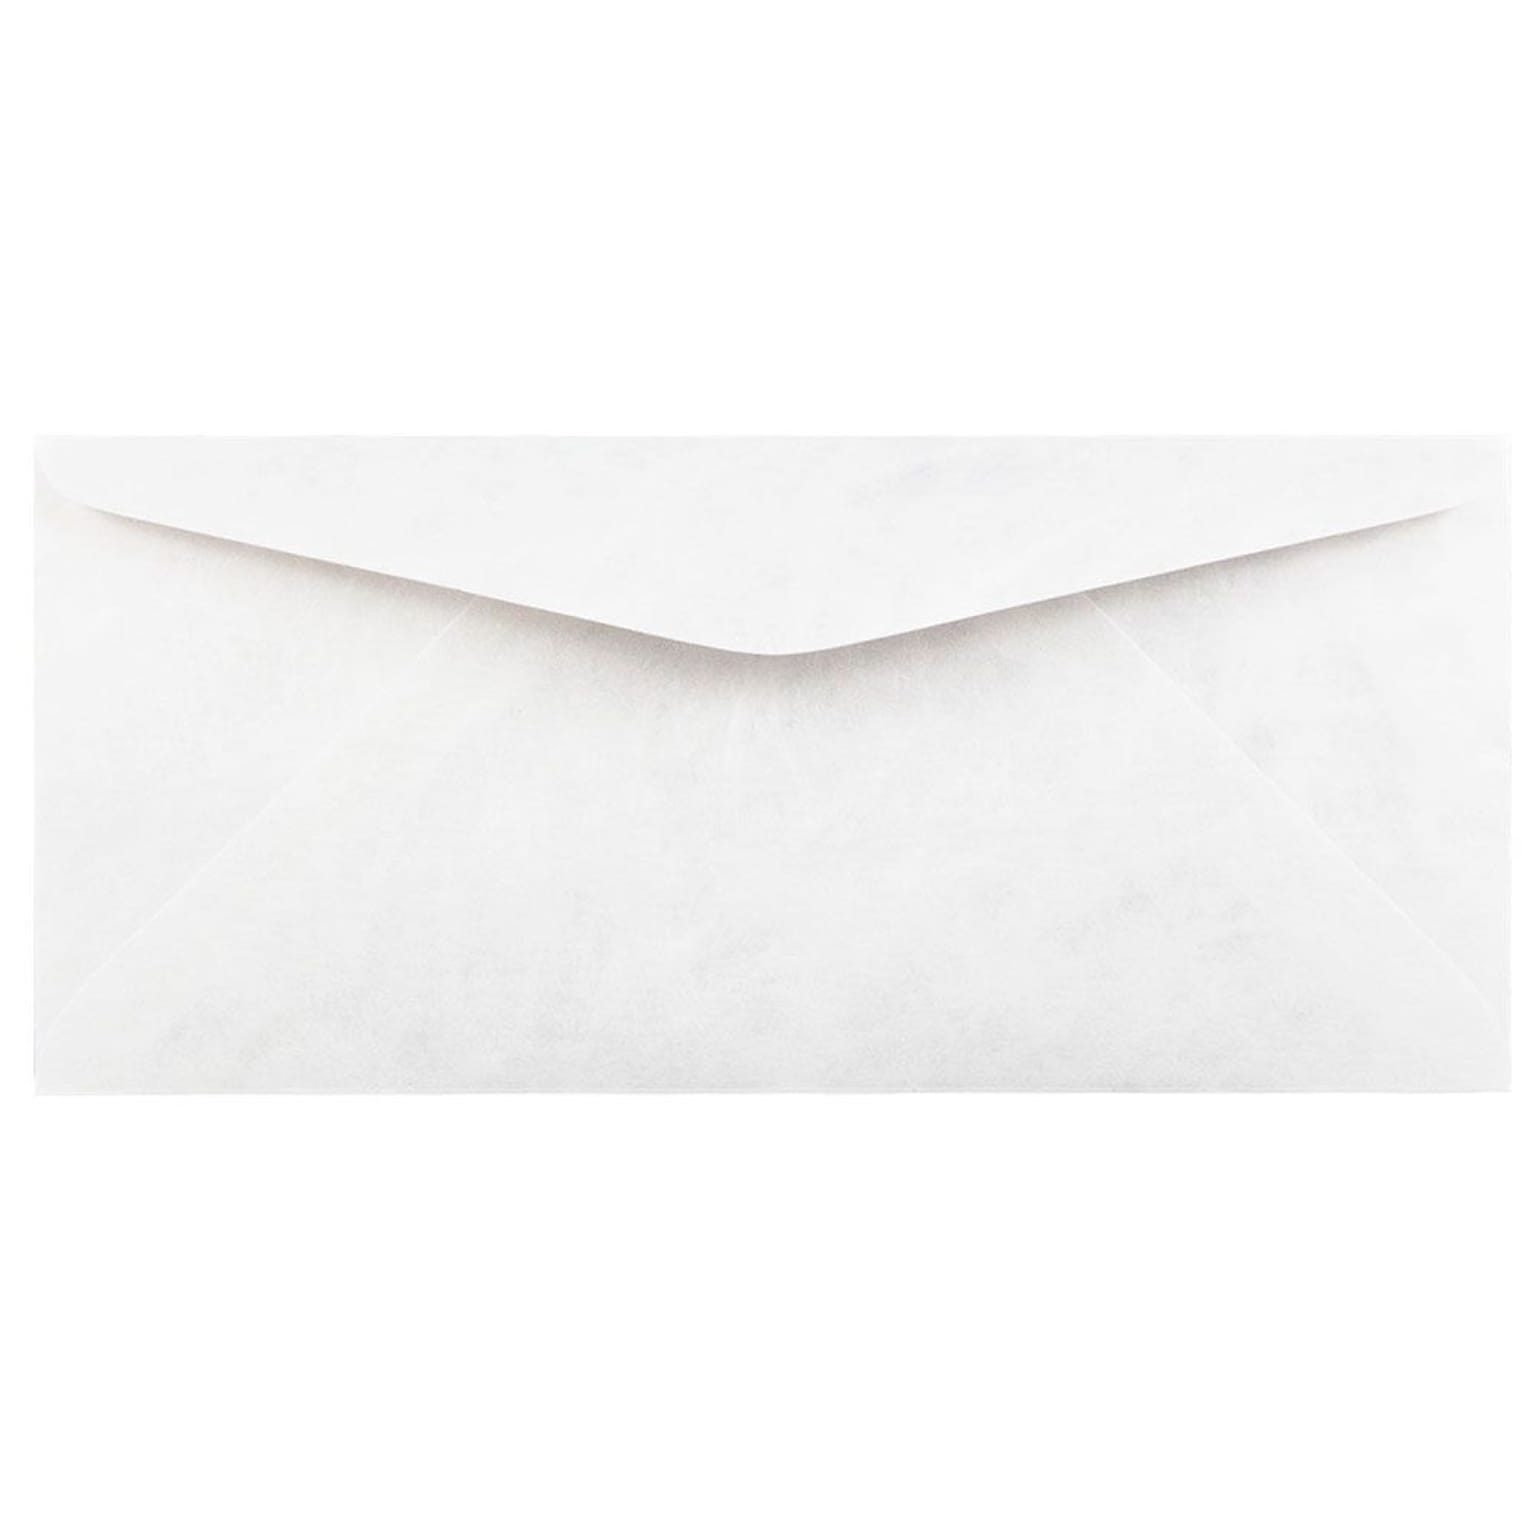 JAM Paper #9 Tear-Proof Tyvek Envelopes, 3.875 x 8.875, White, 25/Pack (2131080)